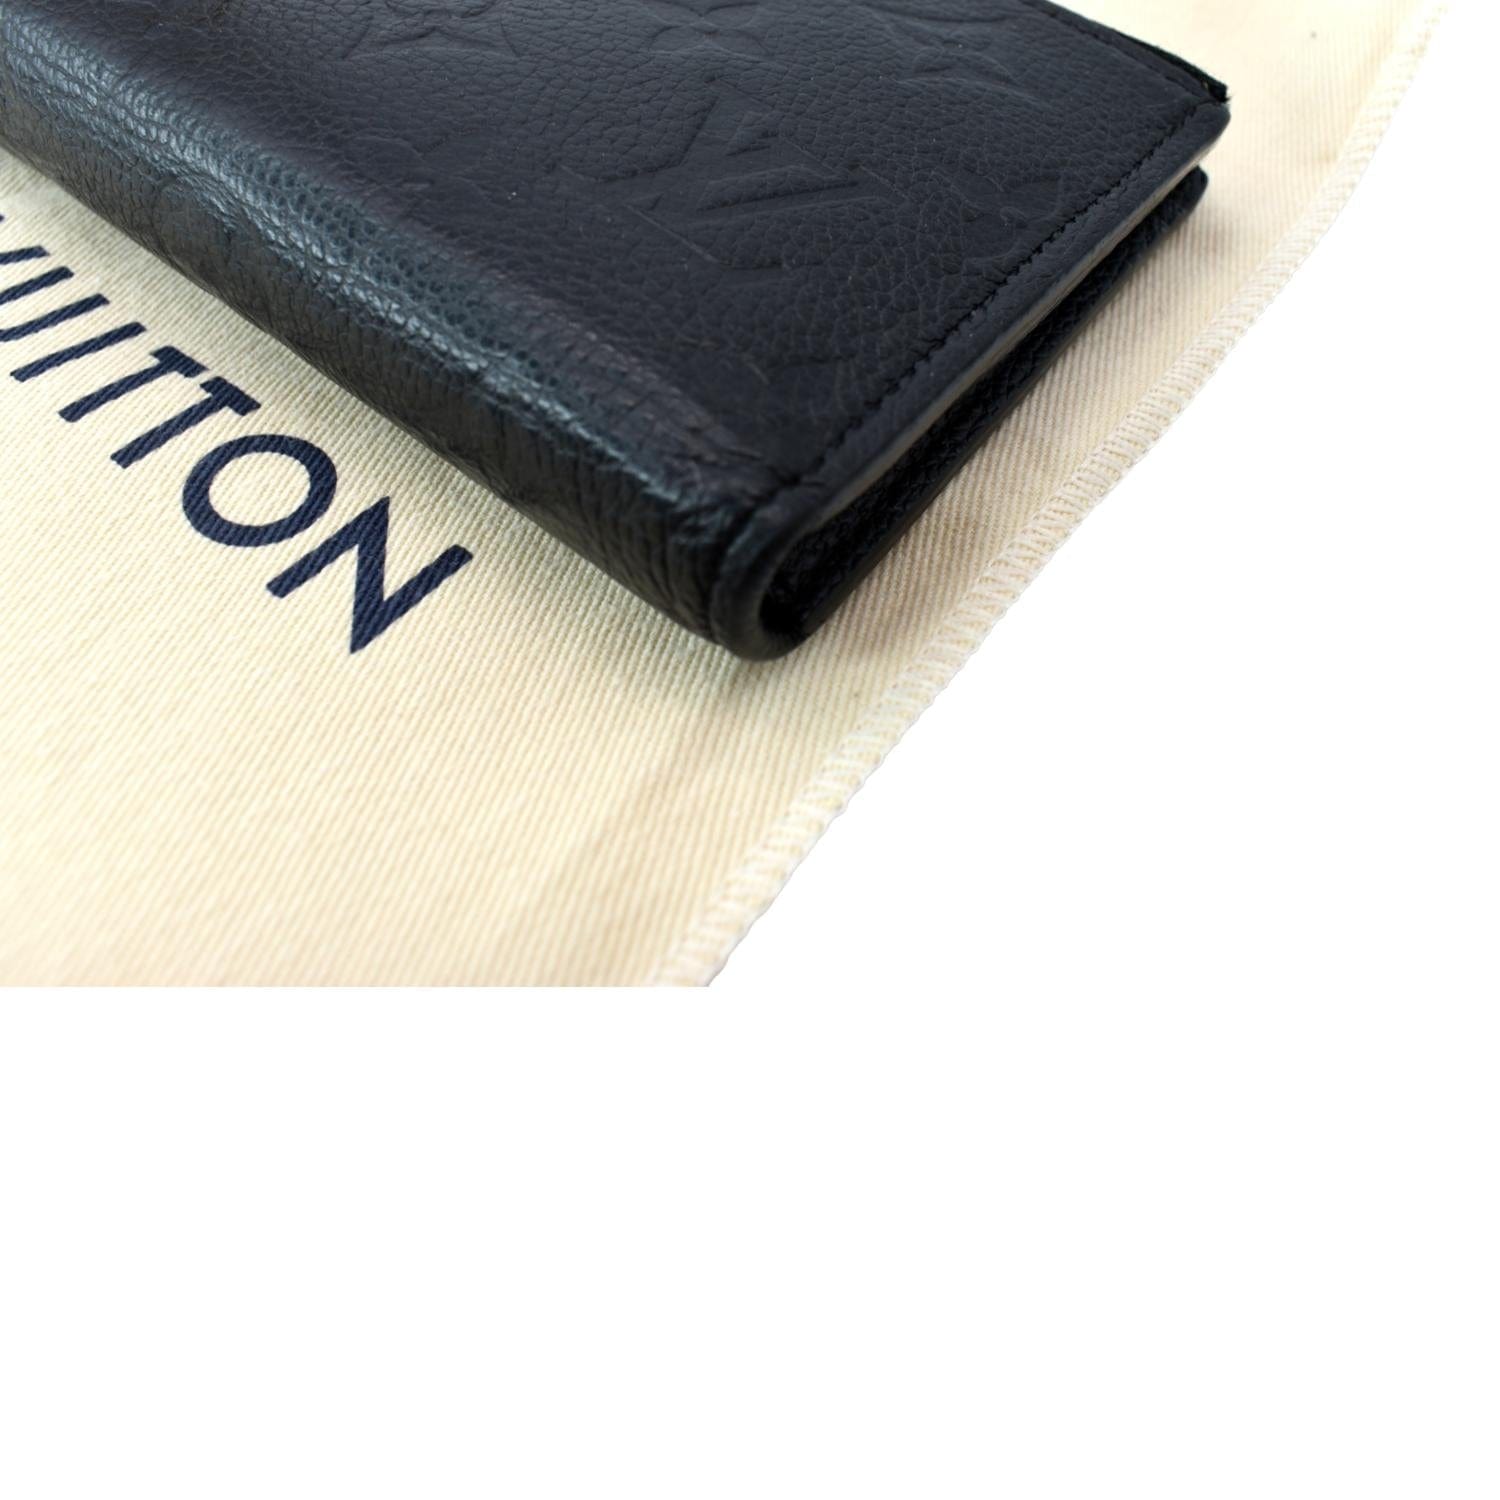 Louis Vuitton Monogram Canvas ADELE WALLET M61287 Black - $179.00